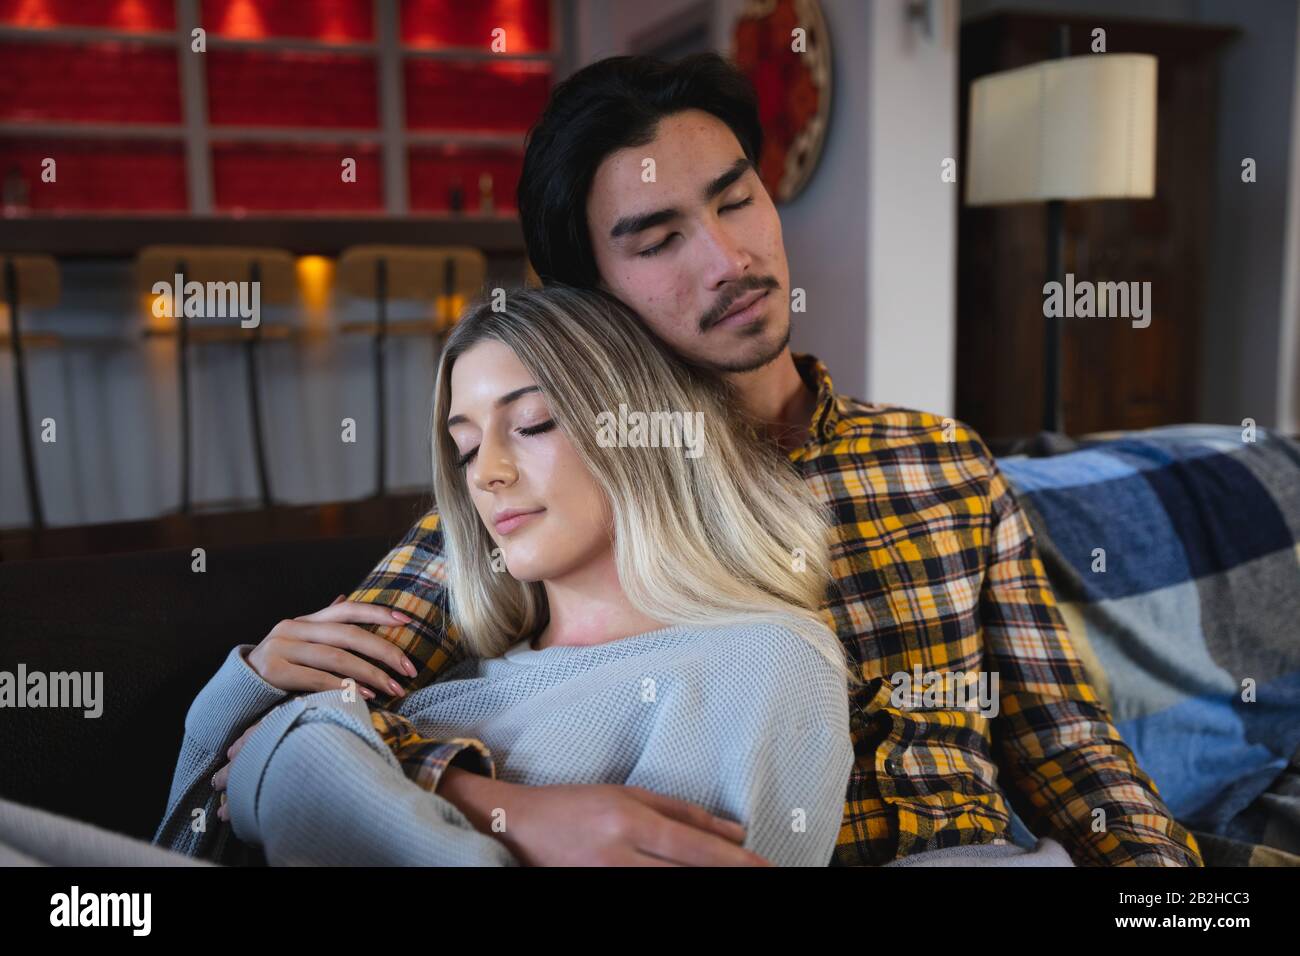 Un jeune couple dormant ensemble sur le canapé Banque D'Images